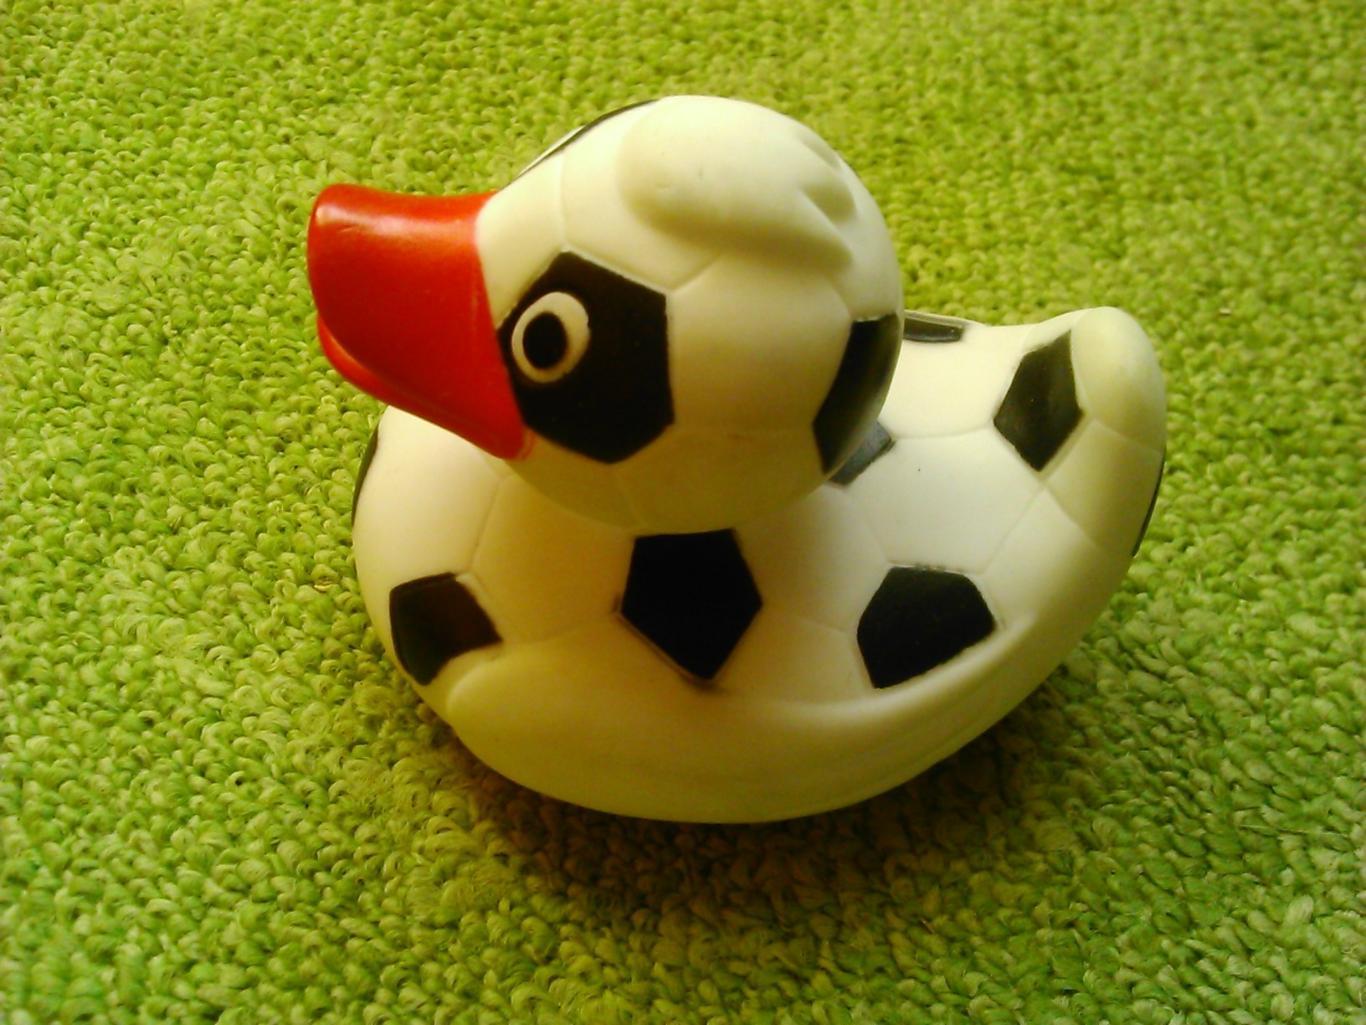 Утка с футбольной символикой, резиновая игрушка с пищалкой. Оптом скидки до 45%!